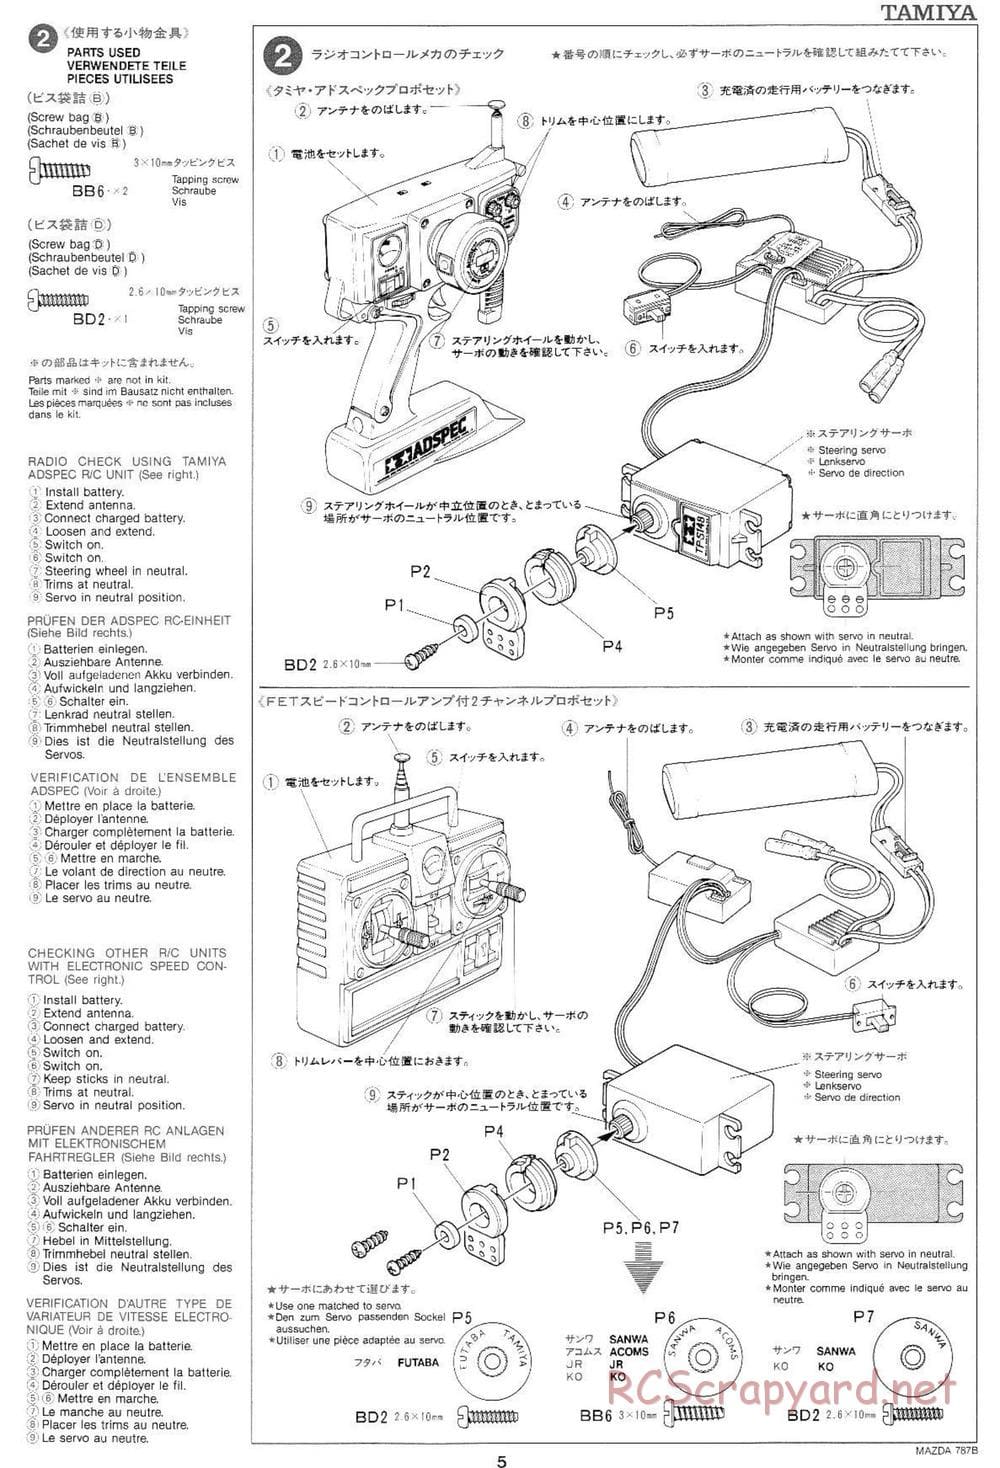 Tamiya - Mazda 787B - Group-C Chassis - Manual - Page 5